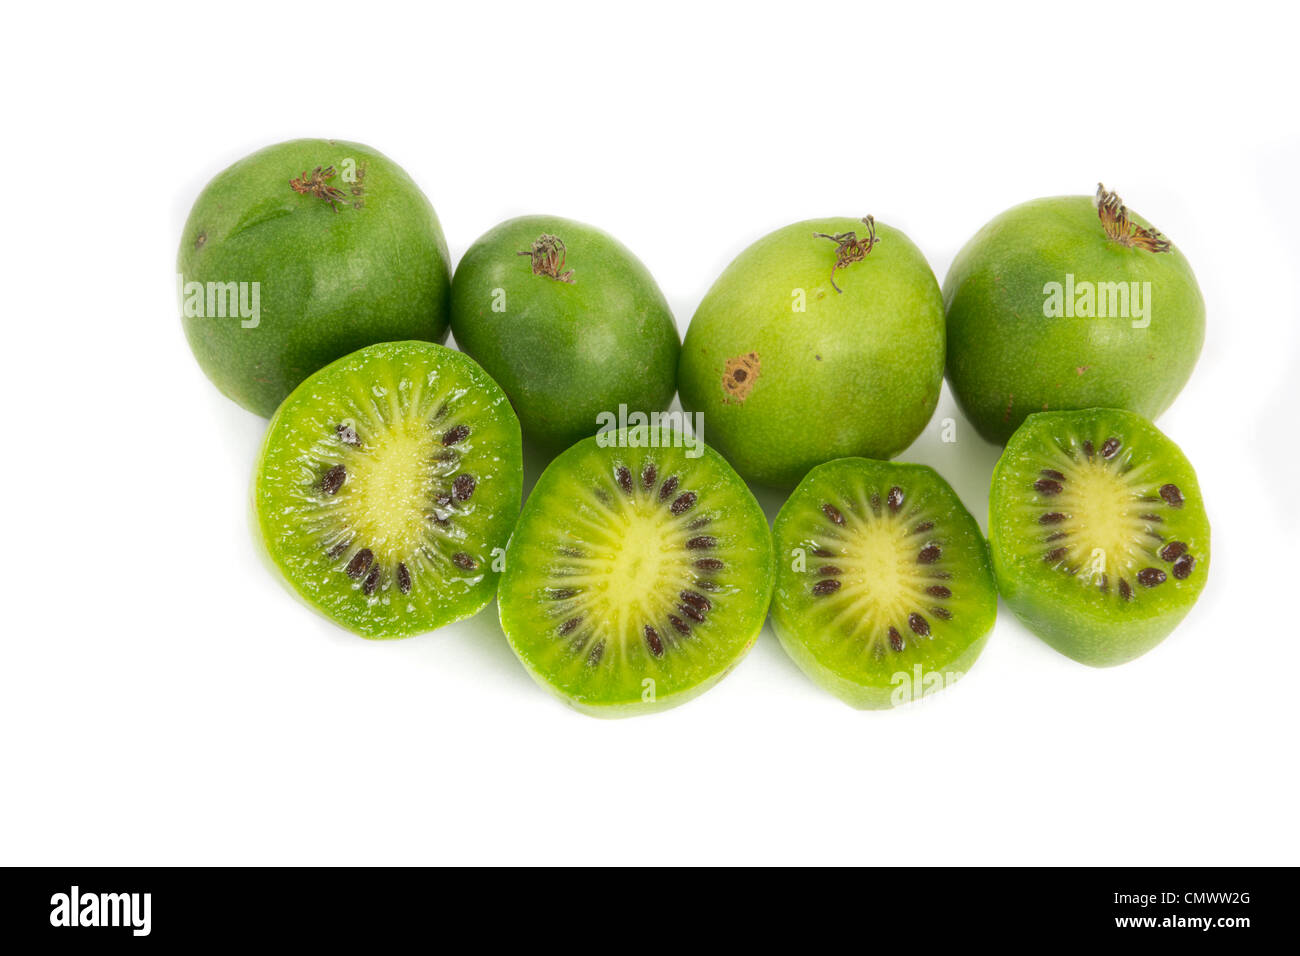 Photo d'un tas de petits fruits kiwi on white Banque D'Images